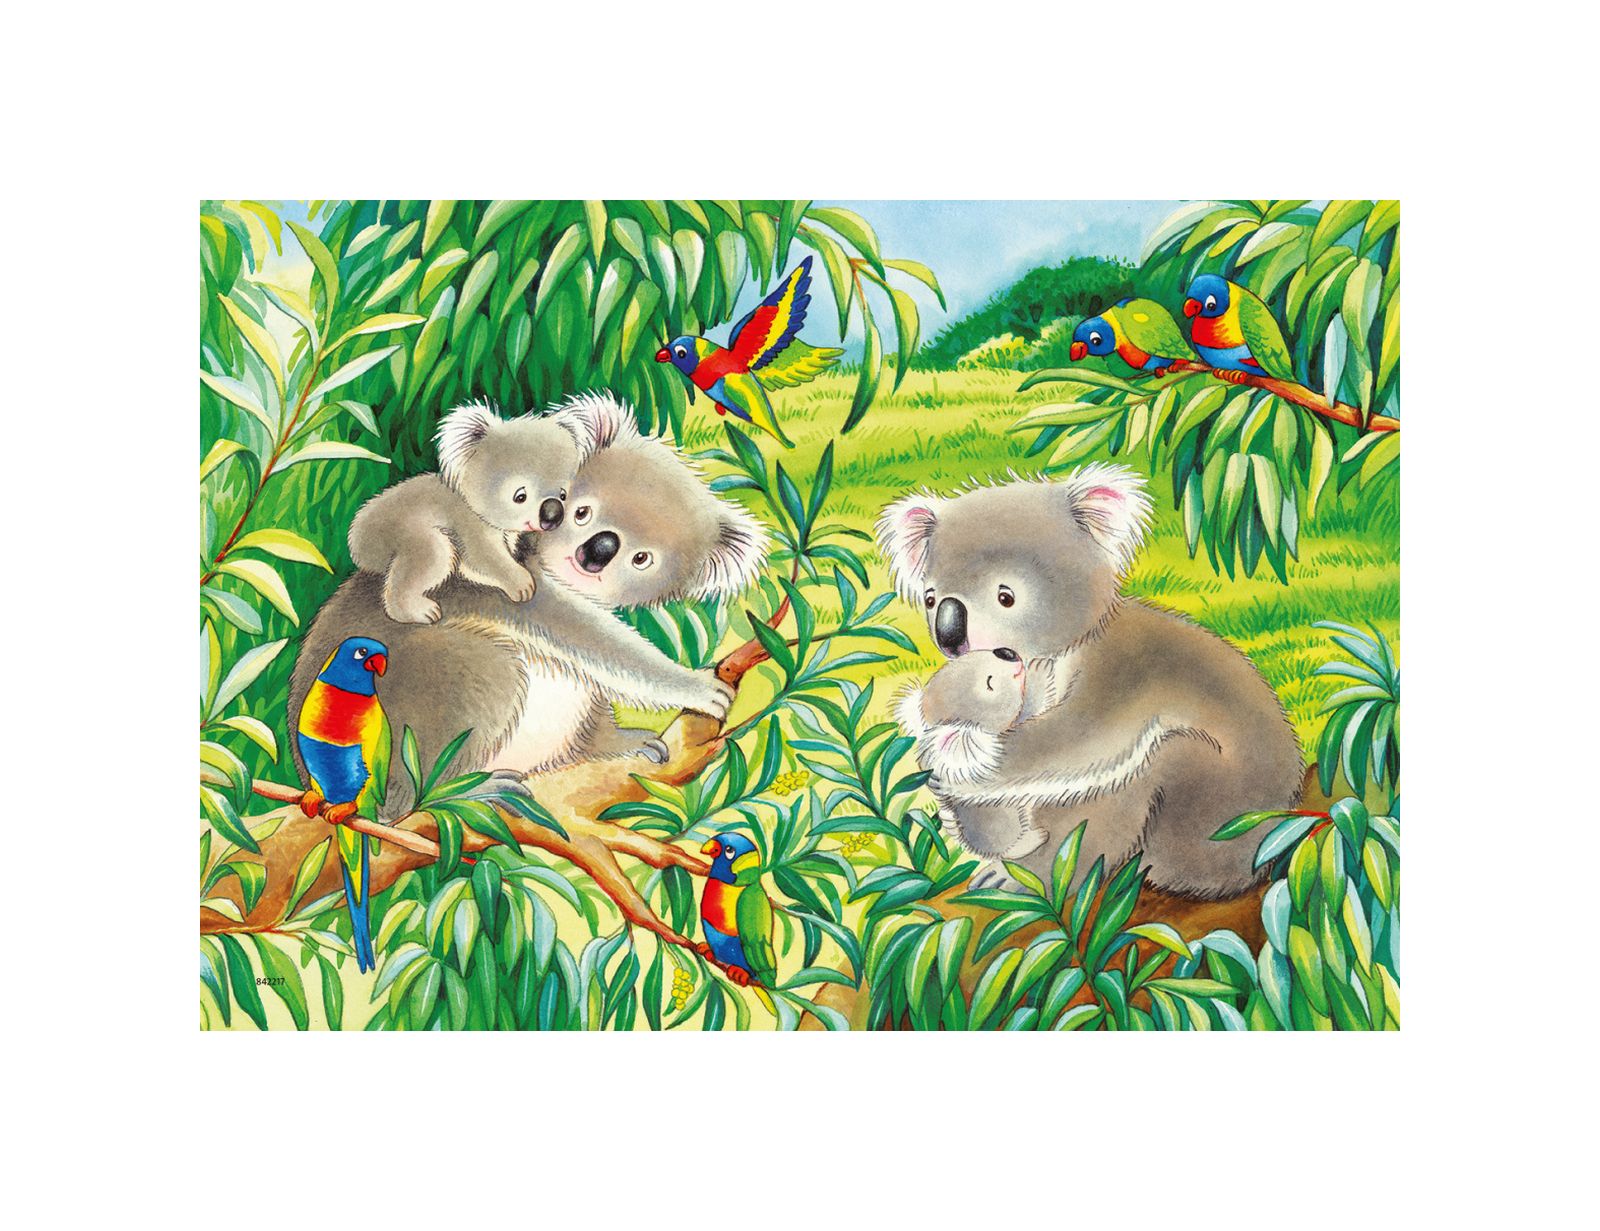 Ravensburger - puzzle 2x24 pezzi - dolci koala e panda - RAVENSBURGER